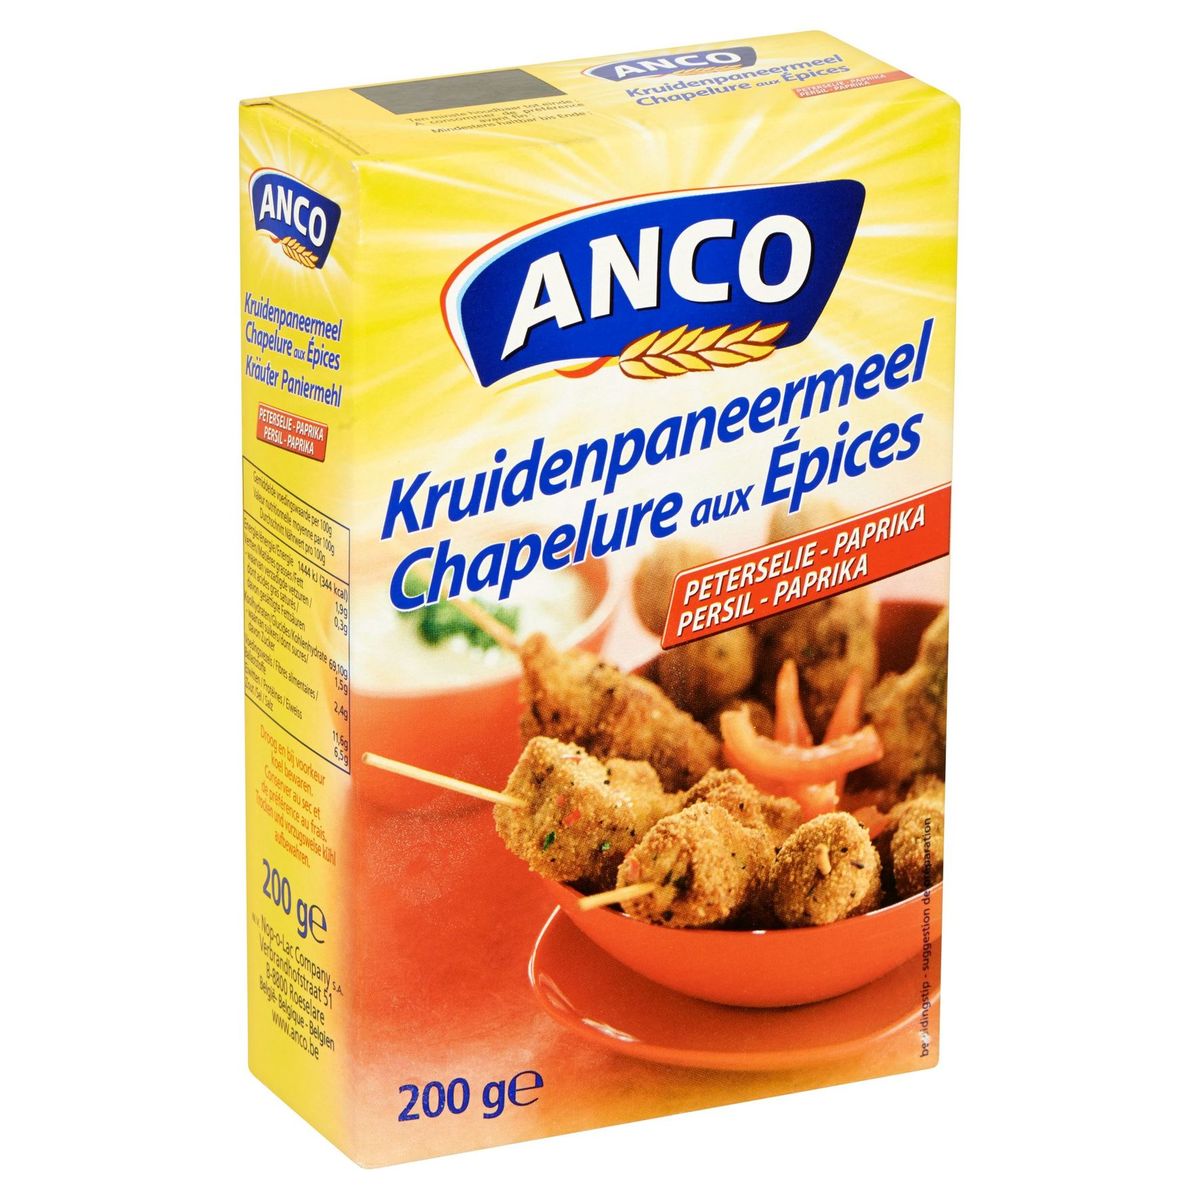 Anco Chapelure aux Épices Persil - Paprika 200 g